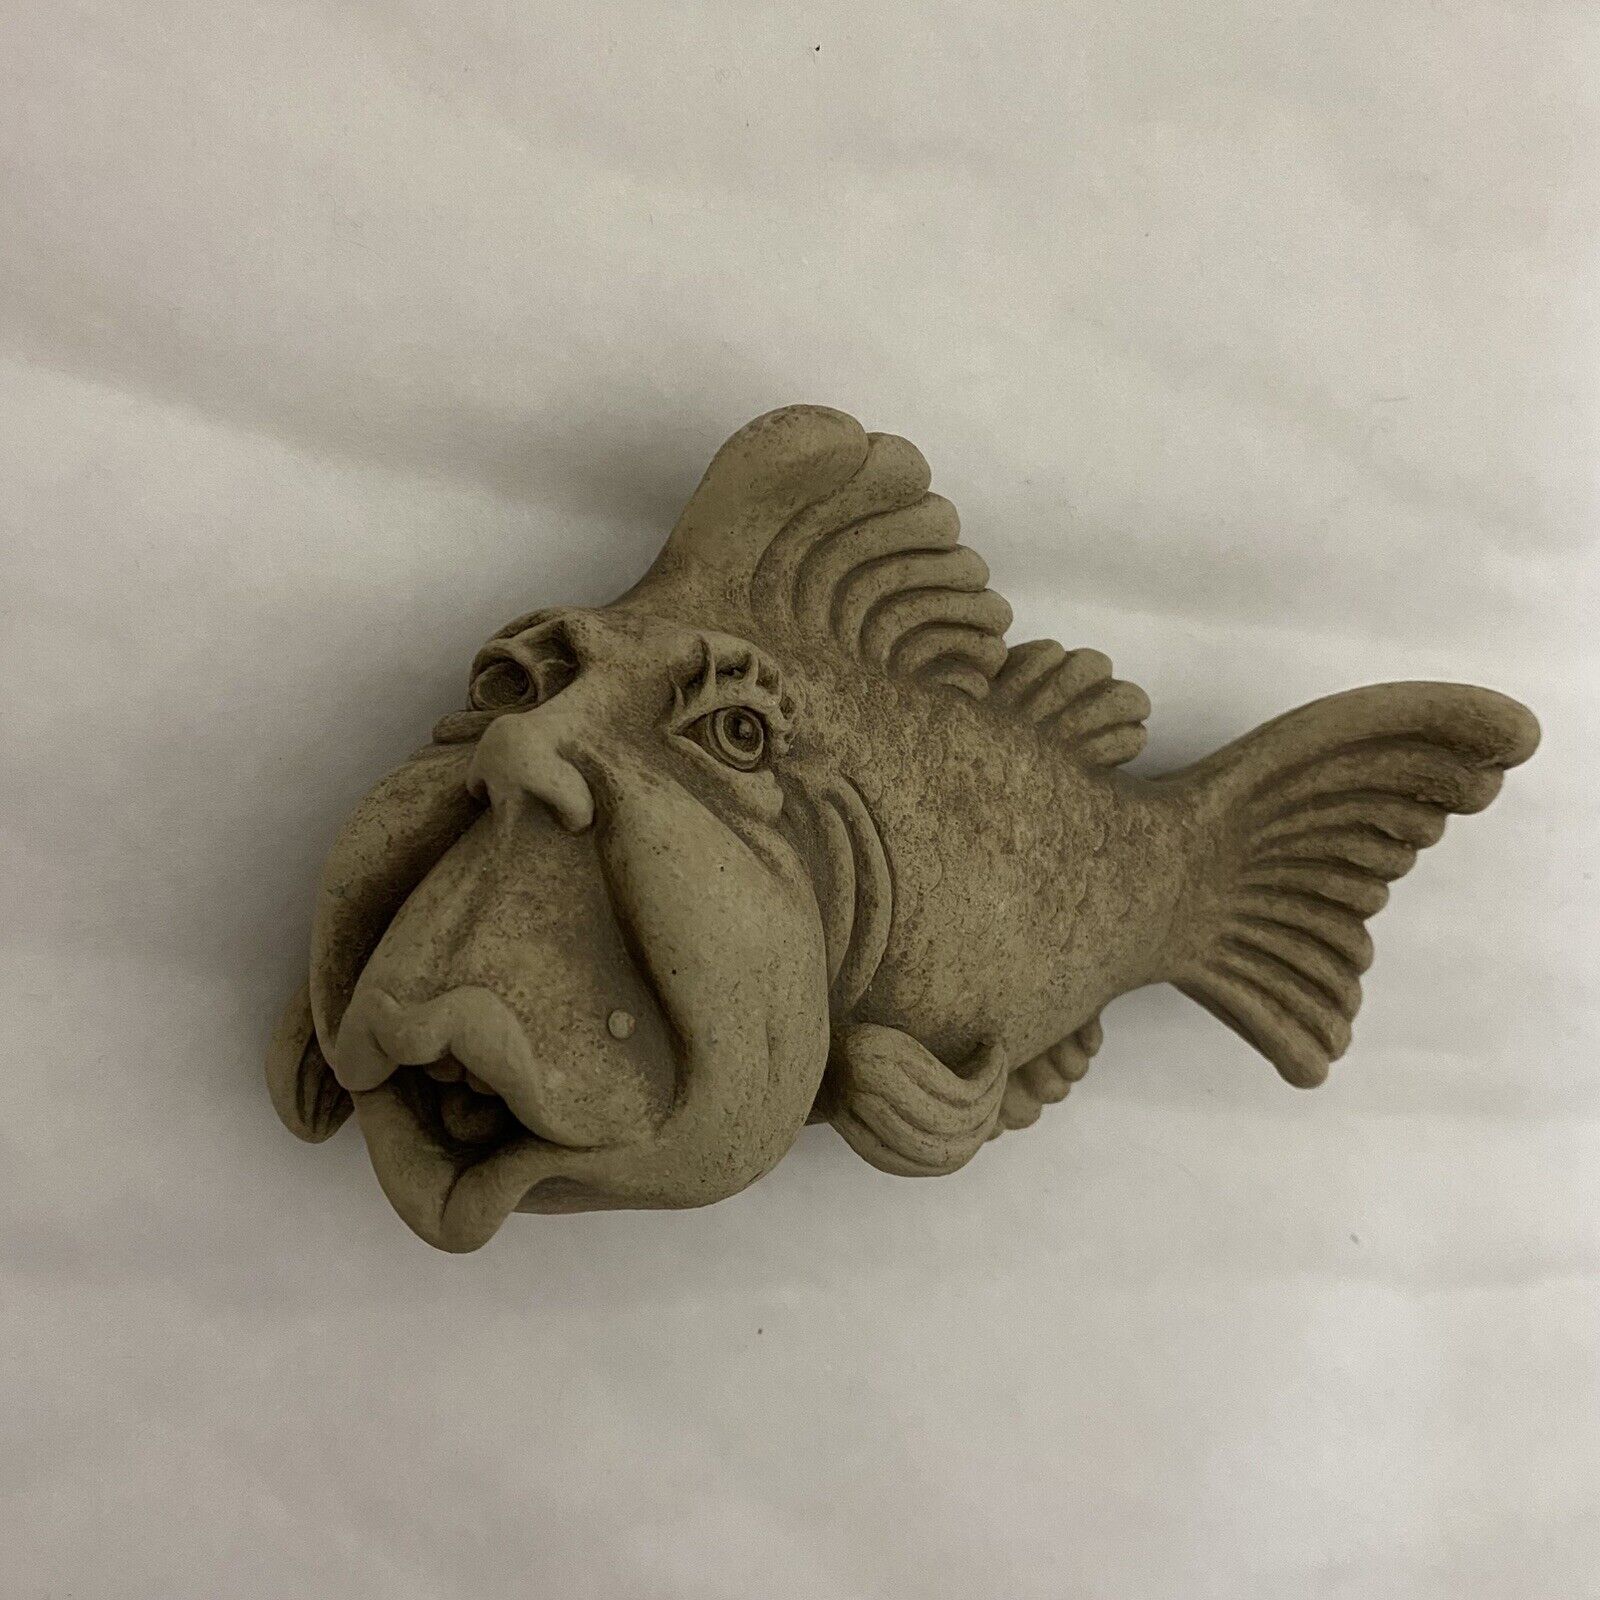 Carruth Studio Stone Fish Sculpture